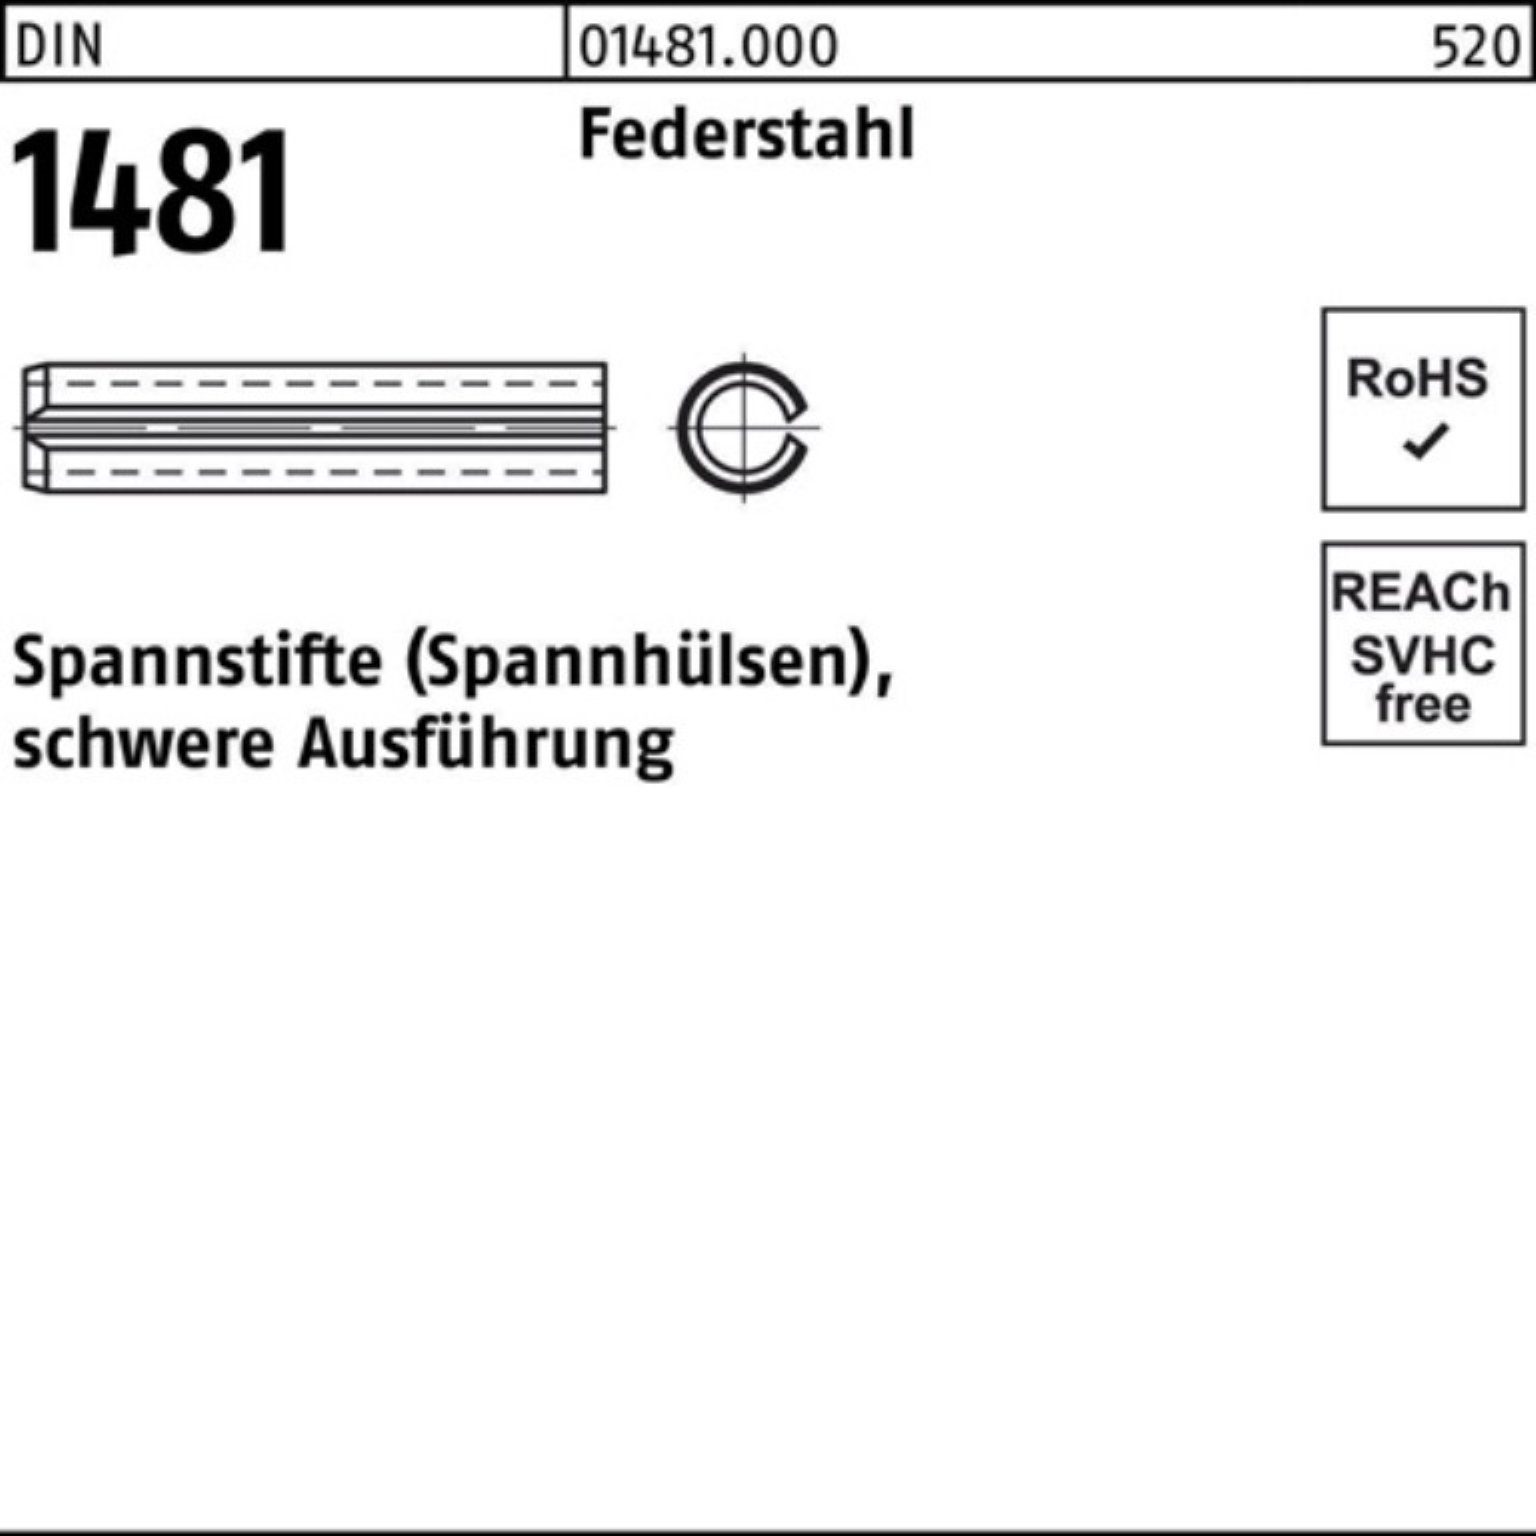 Reyher Spannstift 100er Pack Spannstift 21x 100 DIN Ausführung schwere Federstahl 1481